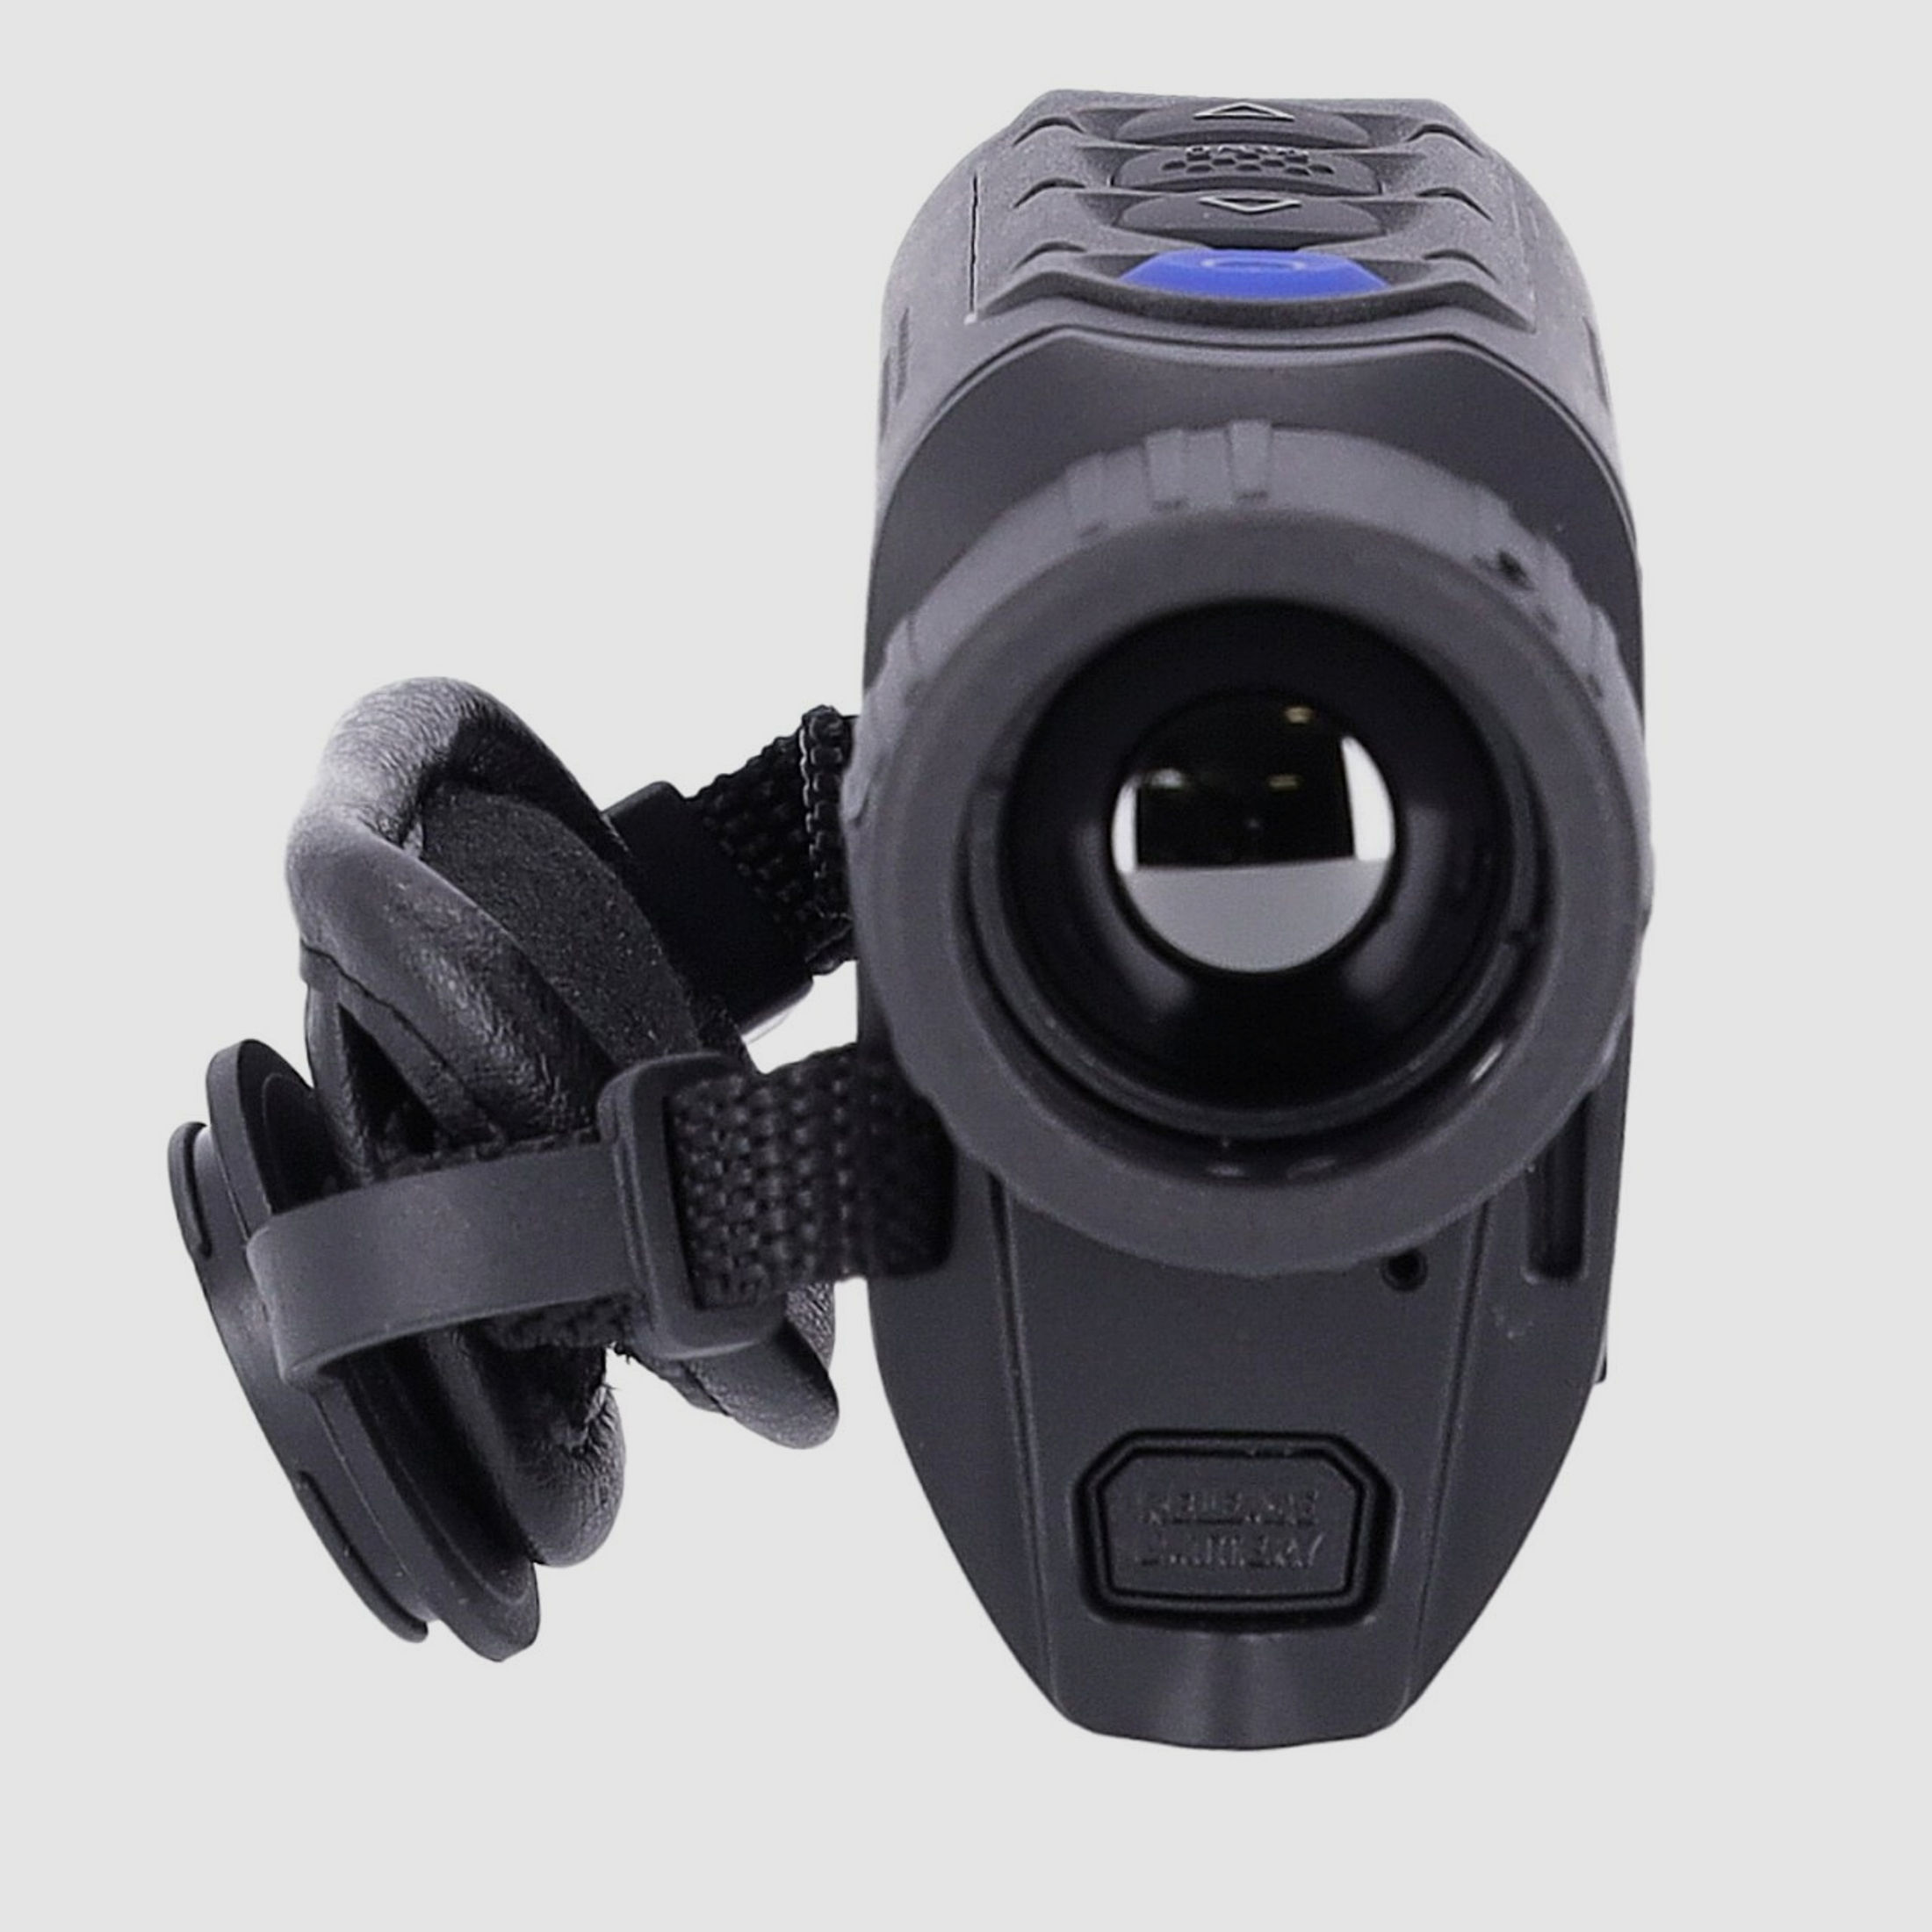 Pulsar Axion XM30S Wärmebildkamera